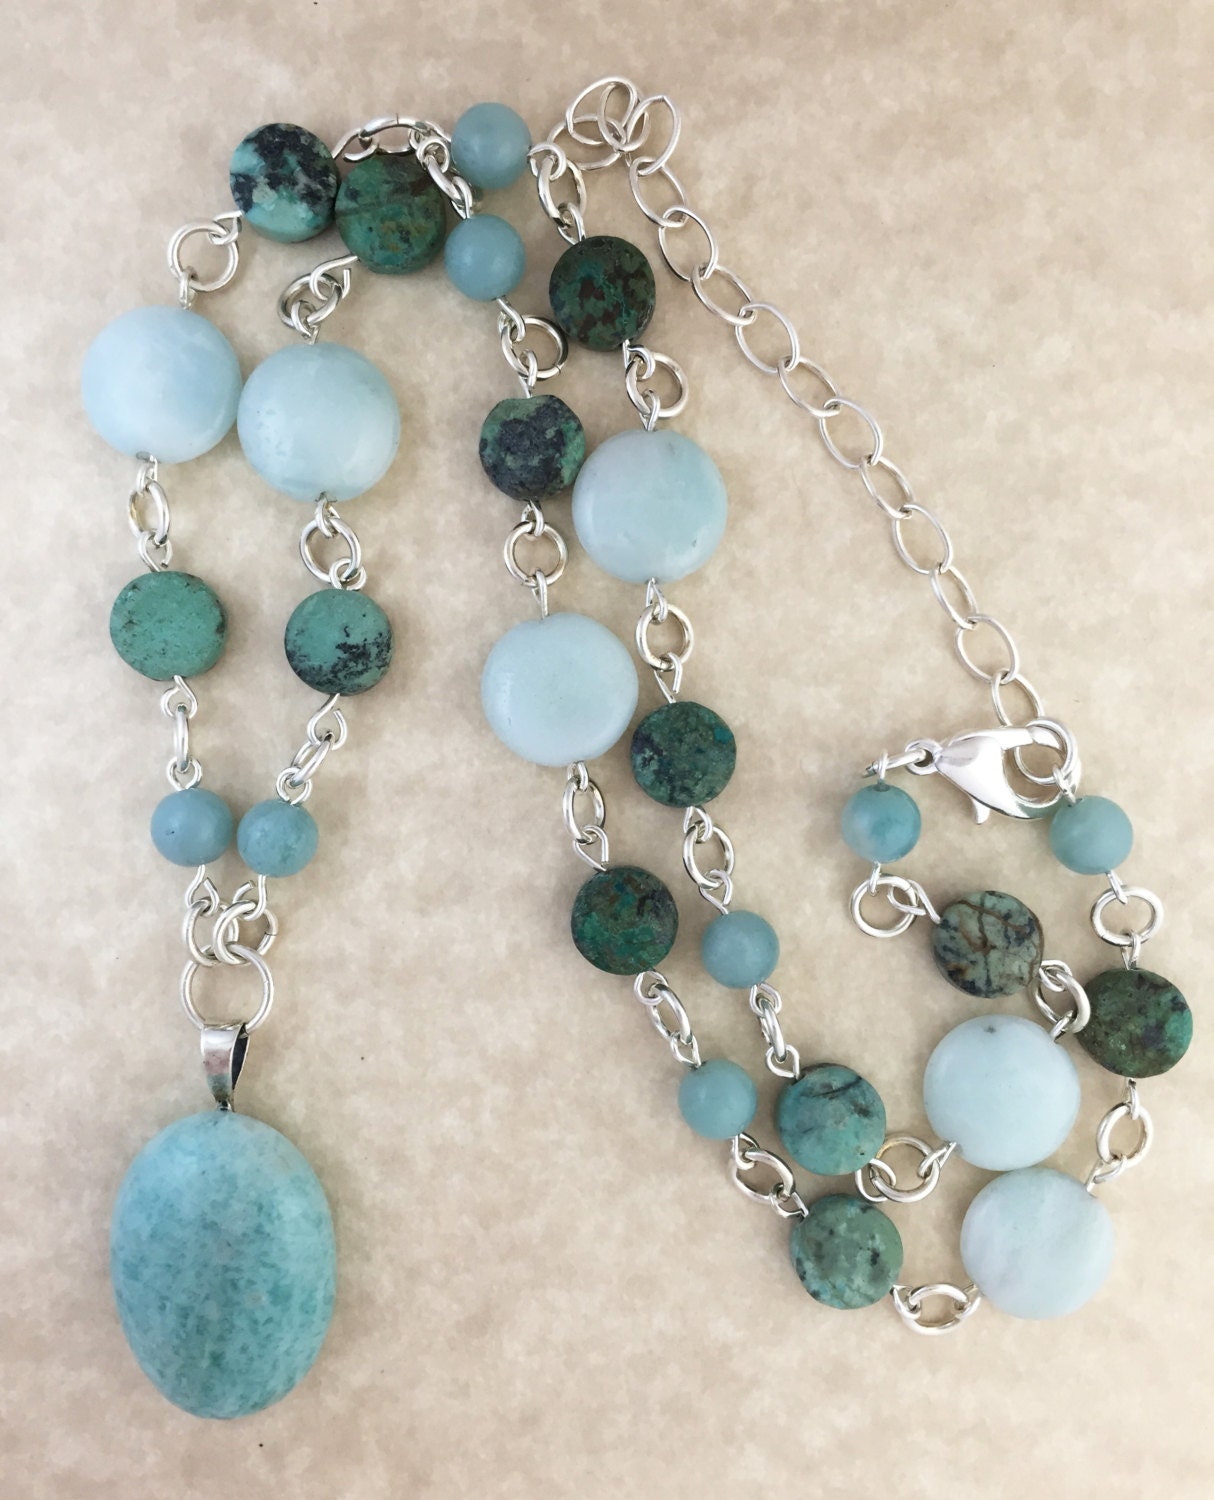 Turquoise Amazonite Pendant Necklace on Beaded Strand of